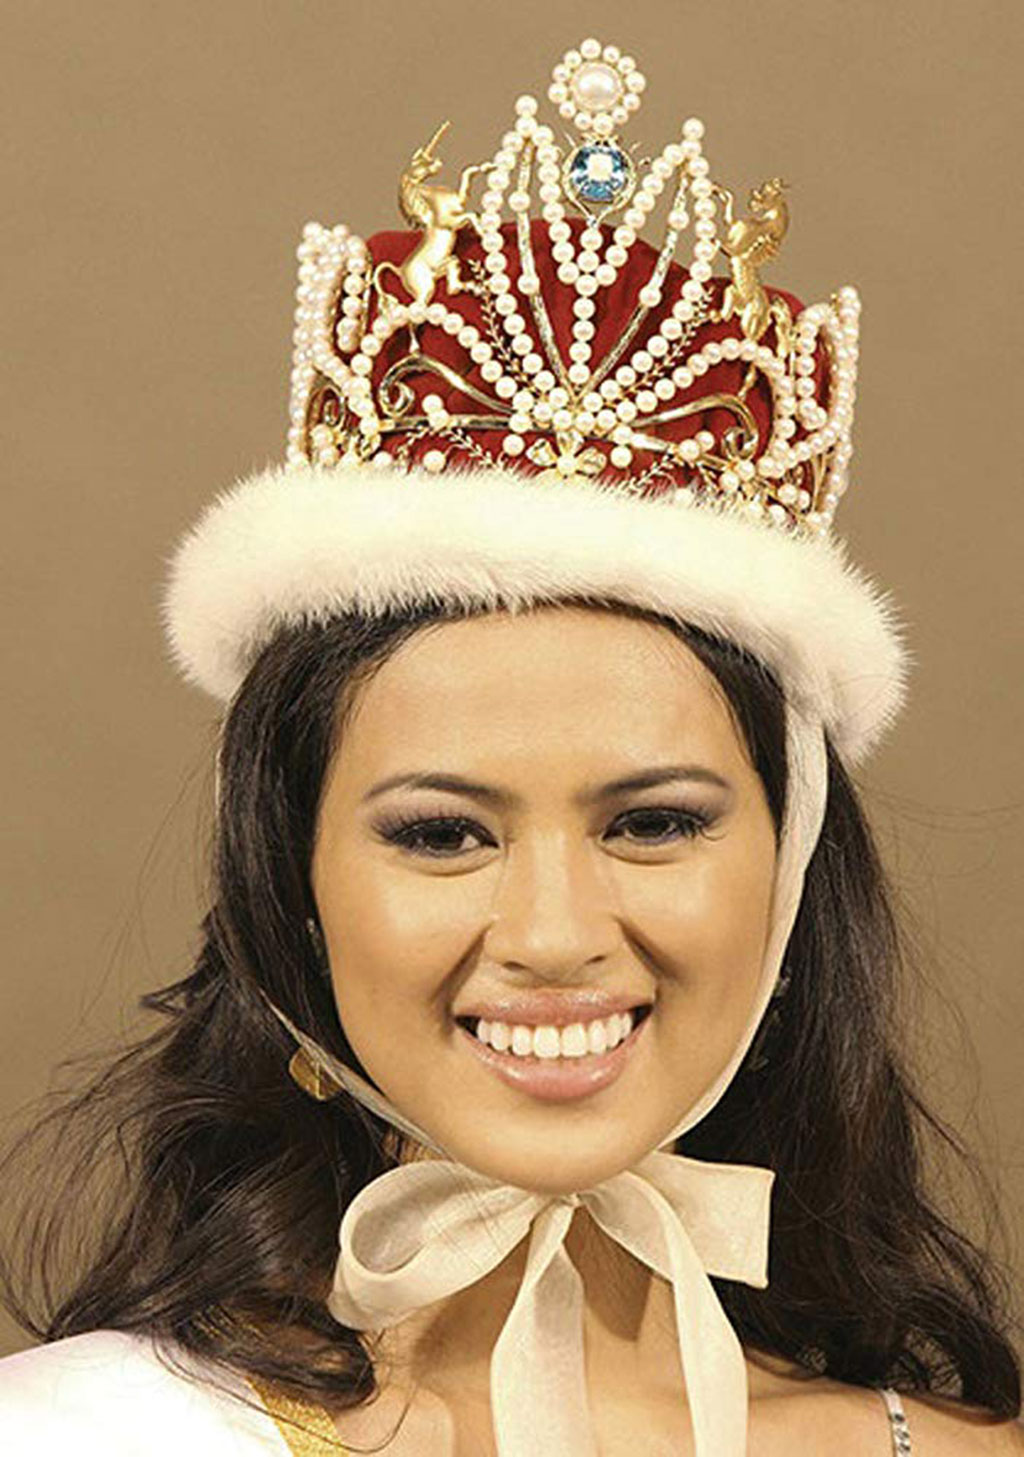  Lara Quigaman, Hoa hậu Quốc tế 2005 sẽ dẫn đoàn vận động viên Malaysia. Ngoài vai trò người mẫu, cô còn tham gia đóng phim - Ảnh: Chụp màn hình